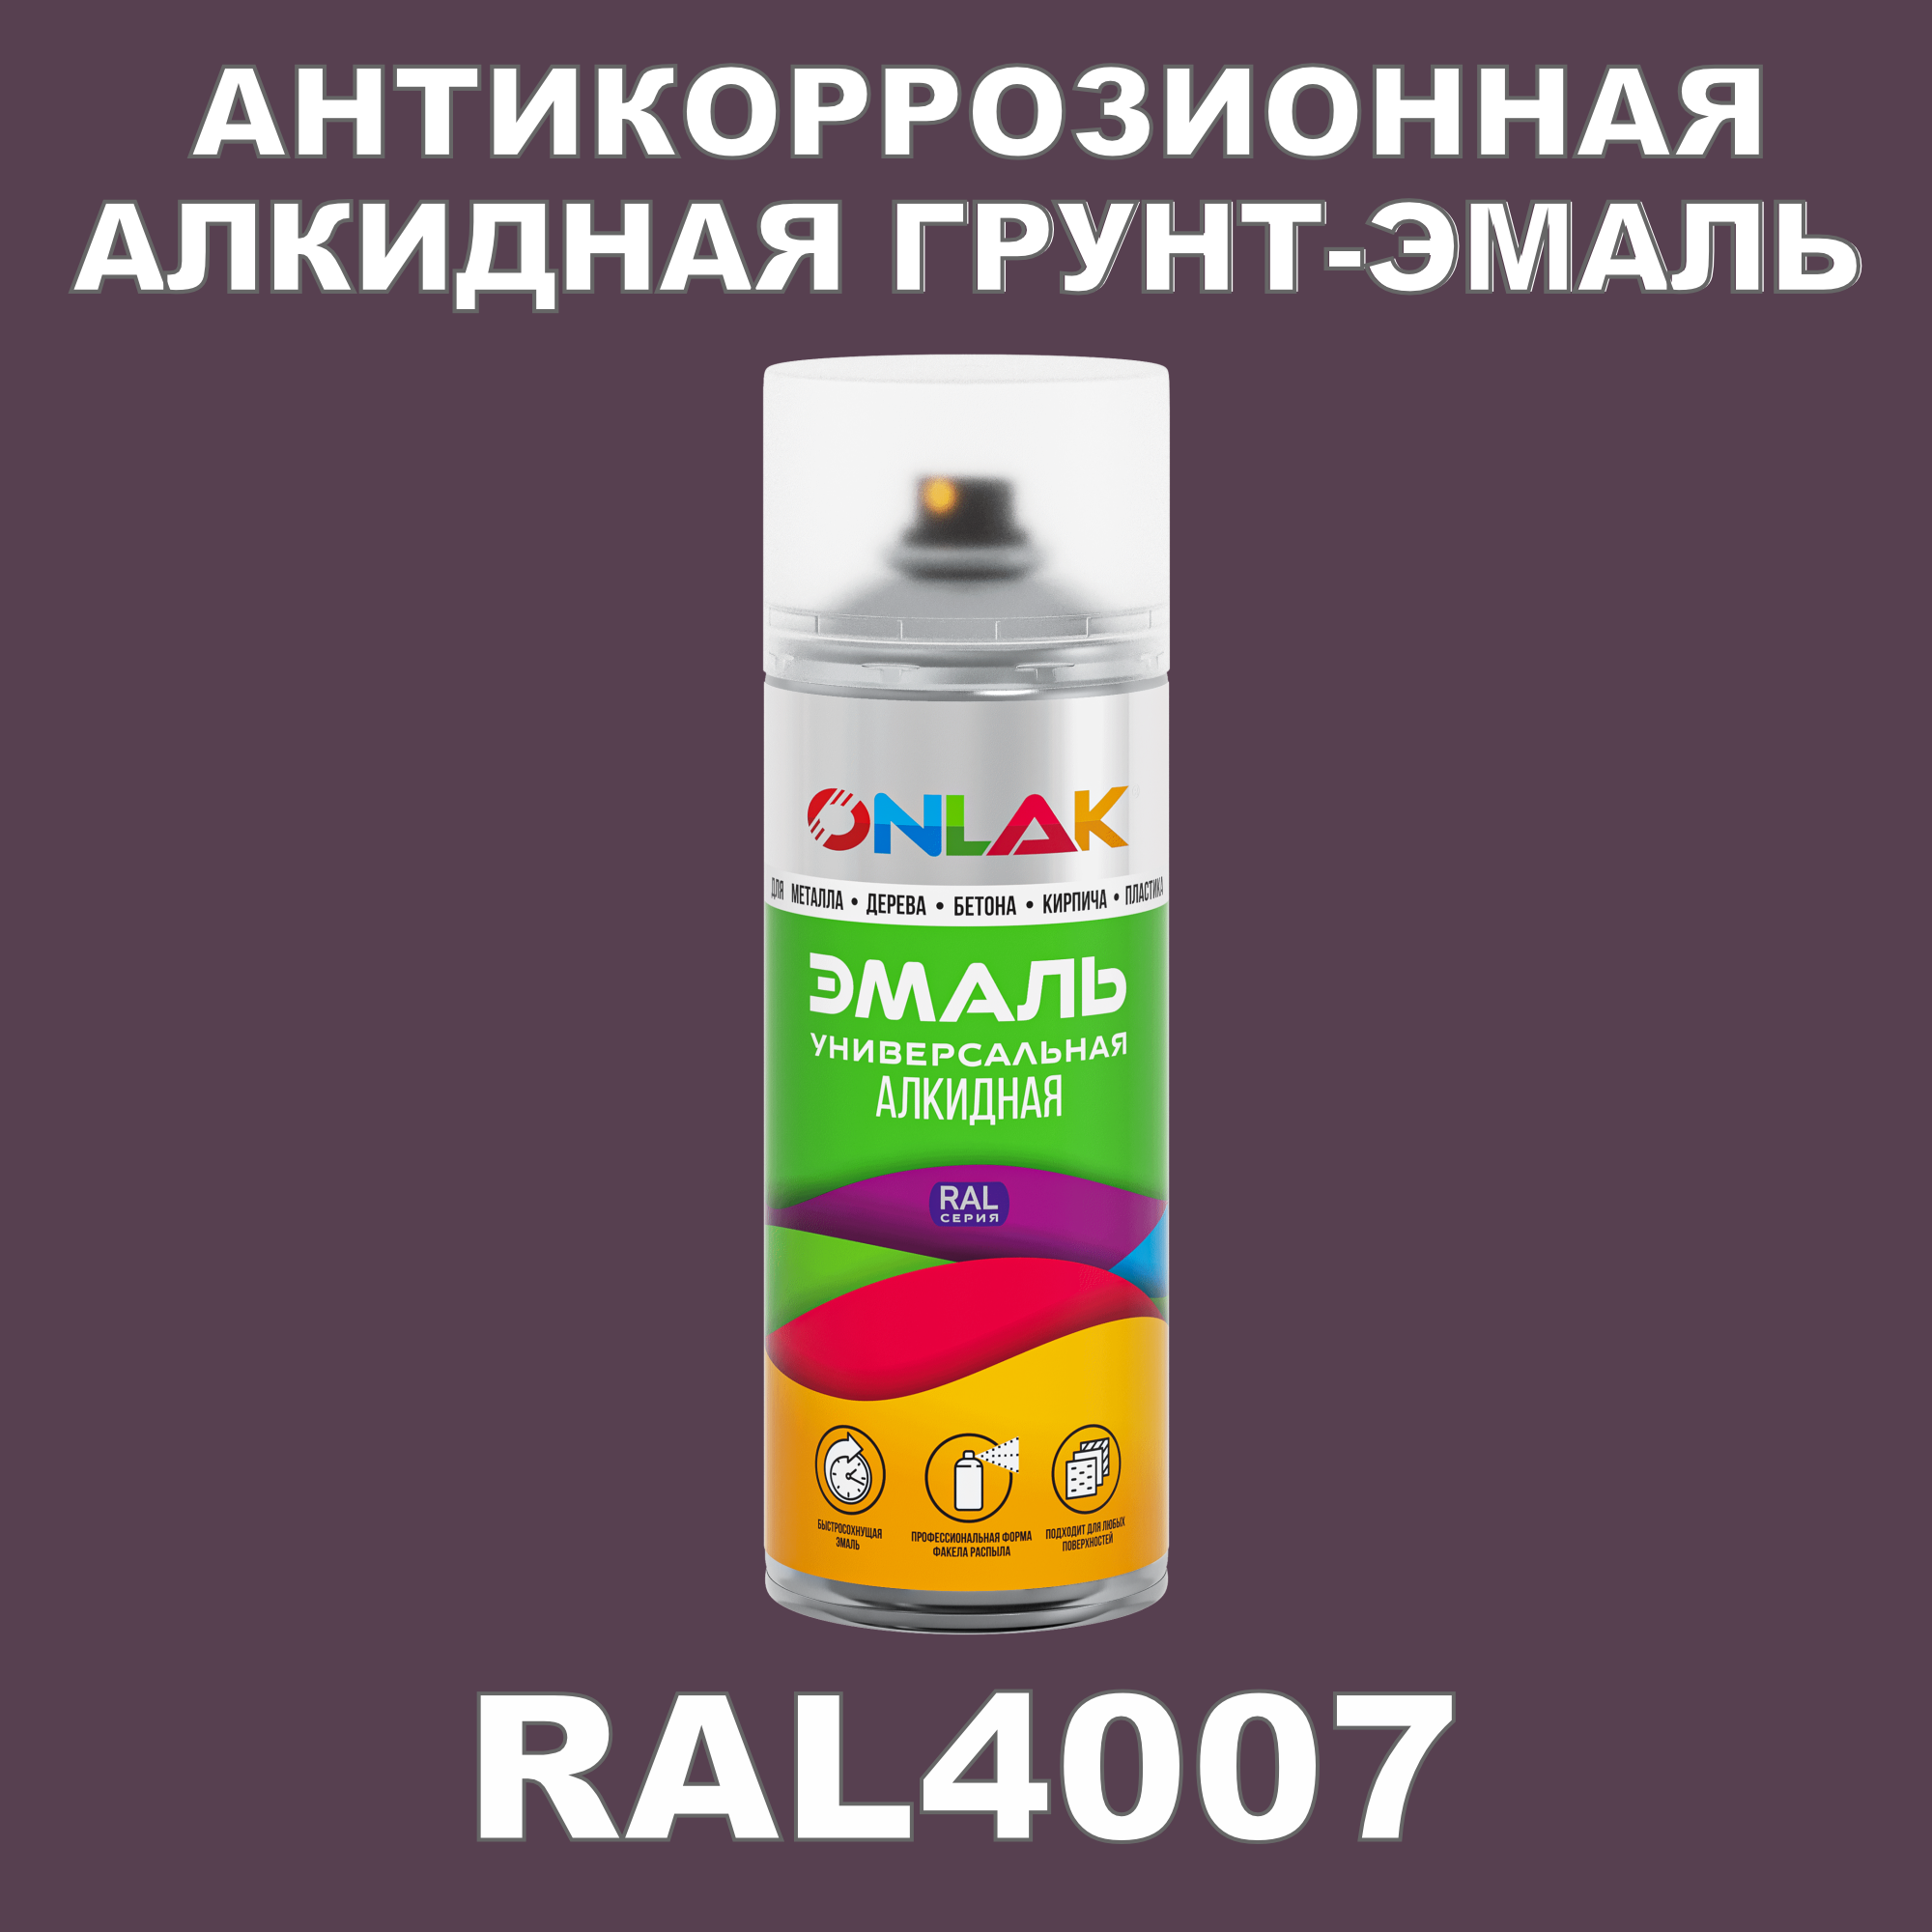 Антикоррозионная грунт-эмаль ONLAK RAL 4007,фиолетовый,572 мл ремень женский ширина 3 5 см пряжка металл цвет фиолетовый